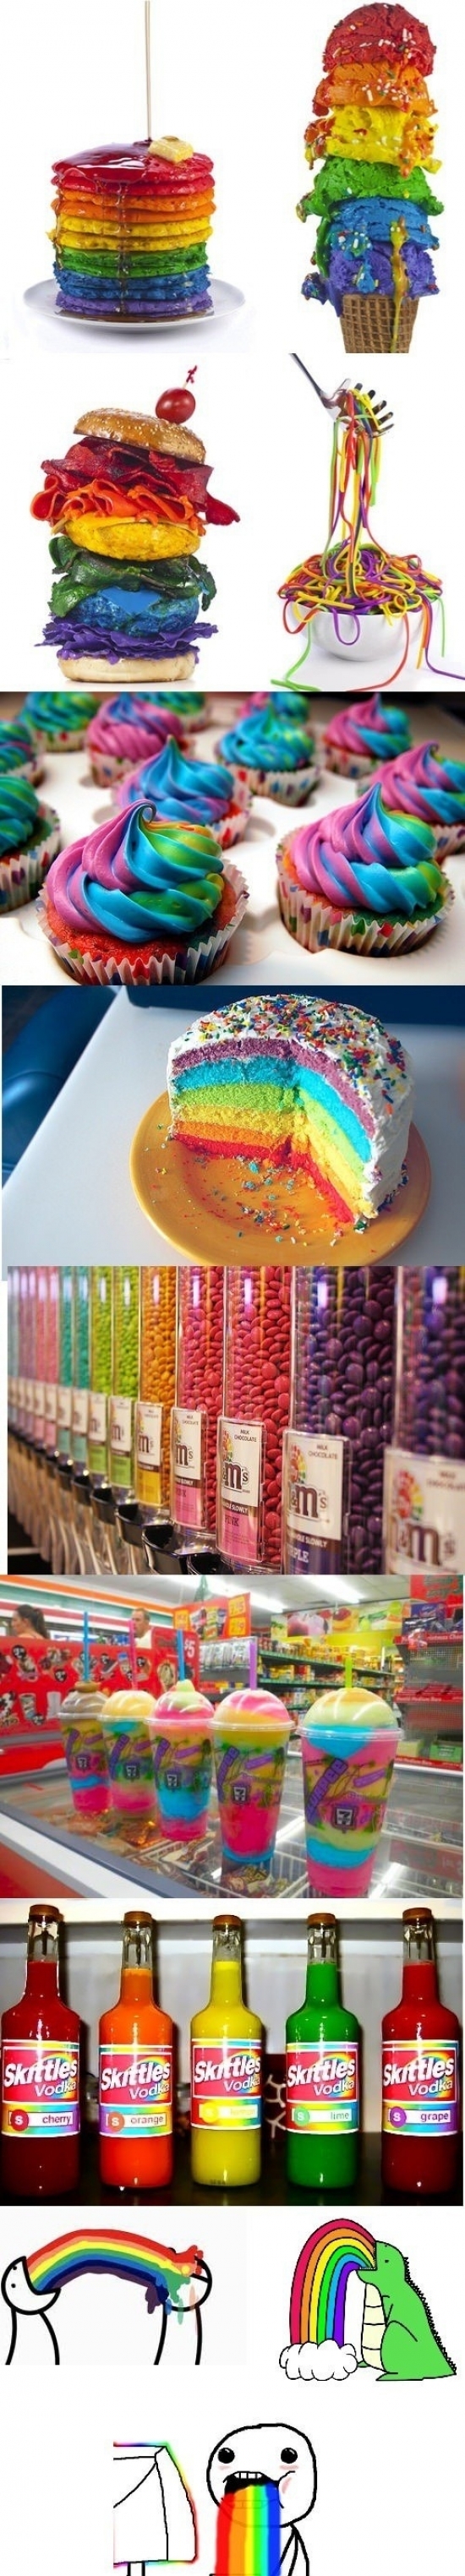 puke rainbows comida colorida caramelos batidos bebida